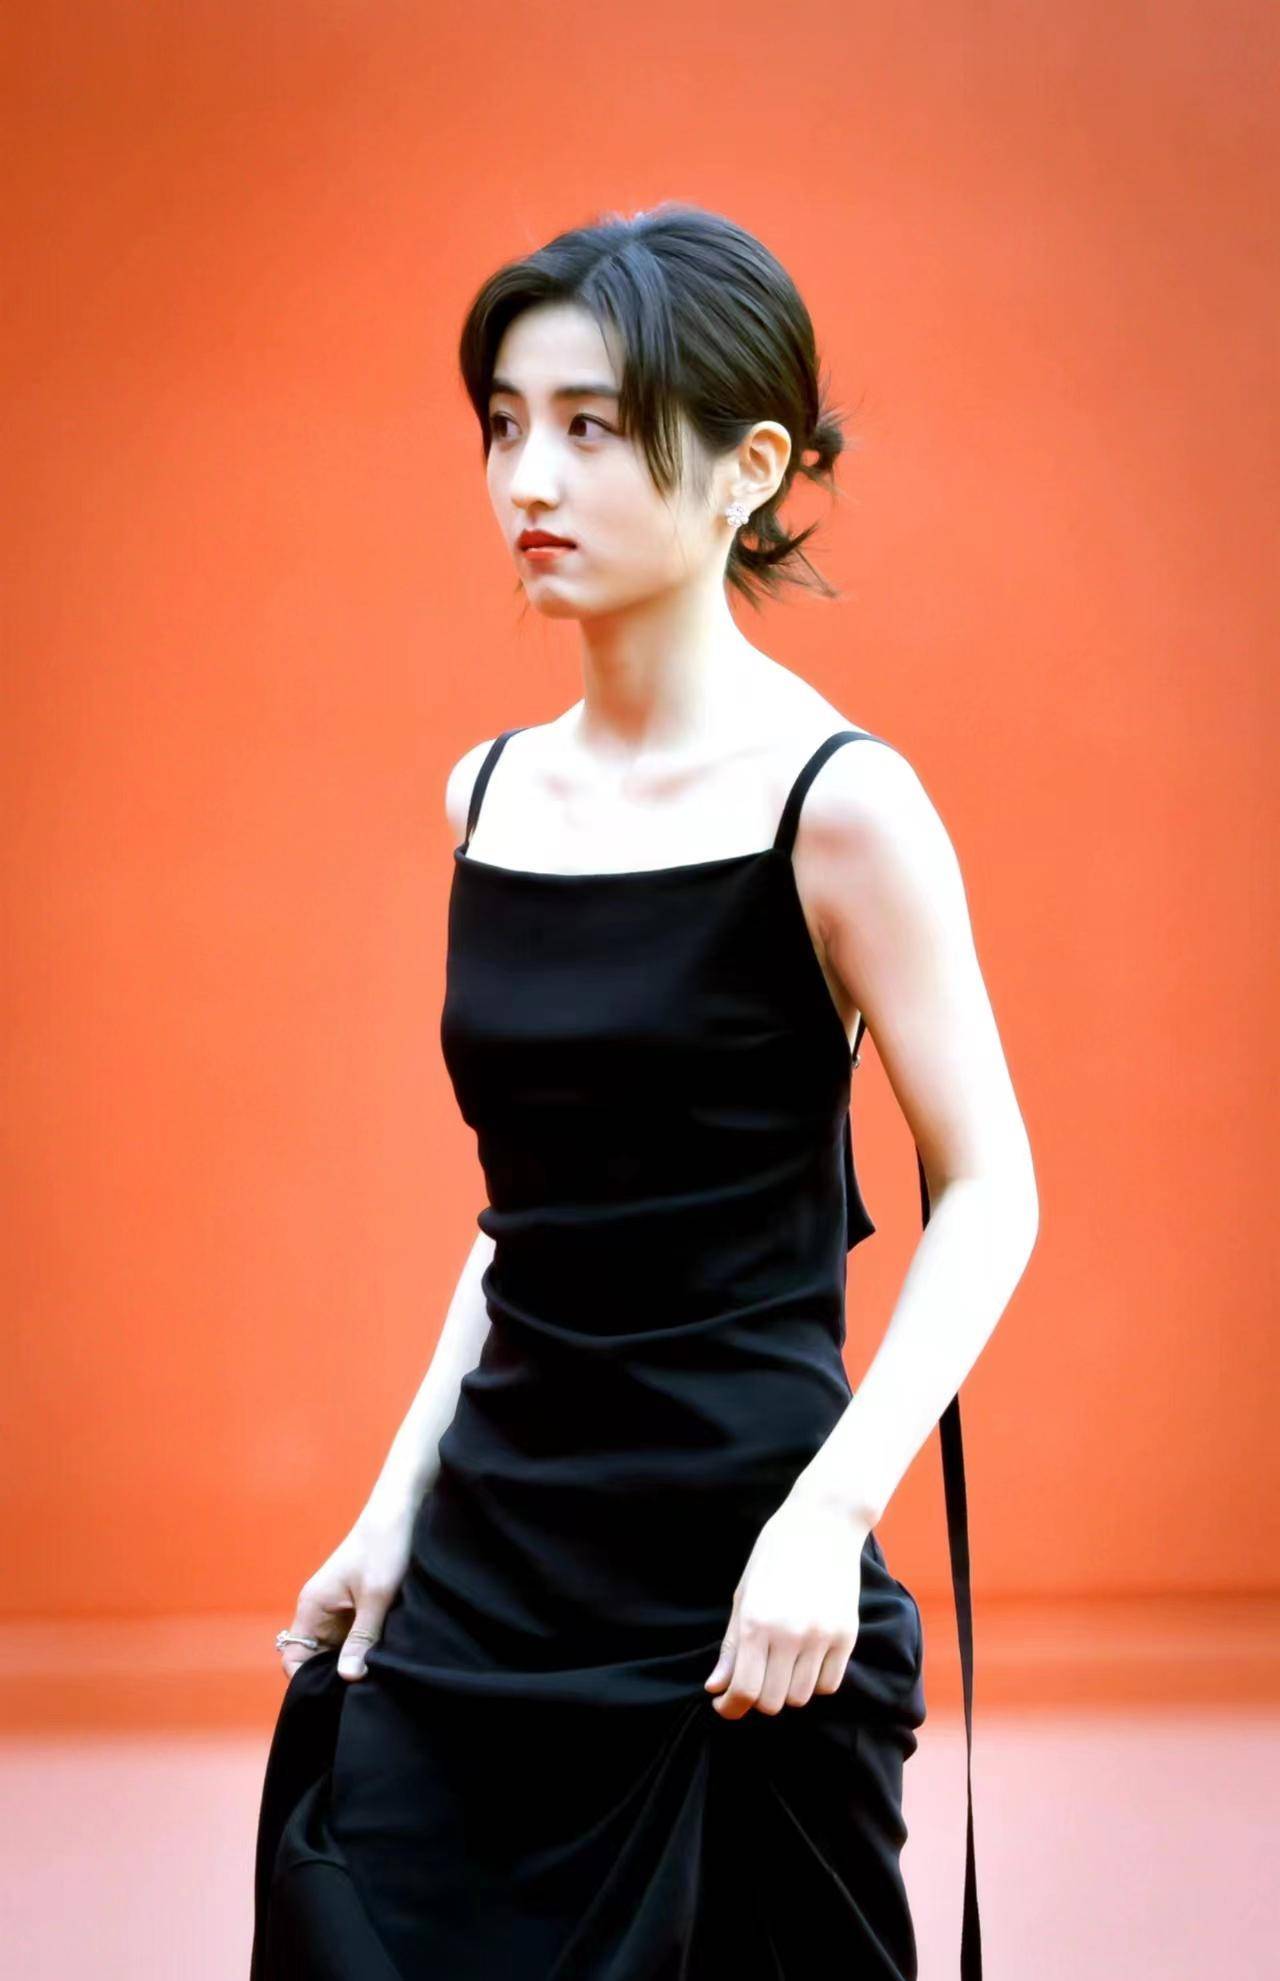 张子枫一袭黑色吊带长裙走北京国际电影节红毯,沉稳优雅!